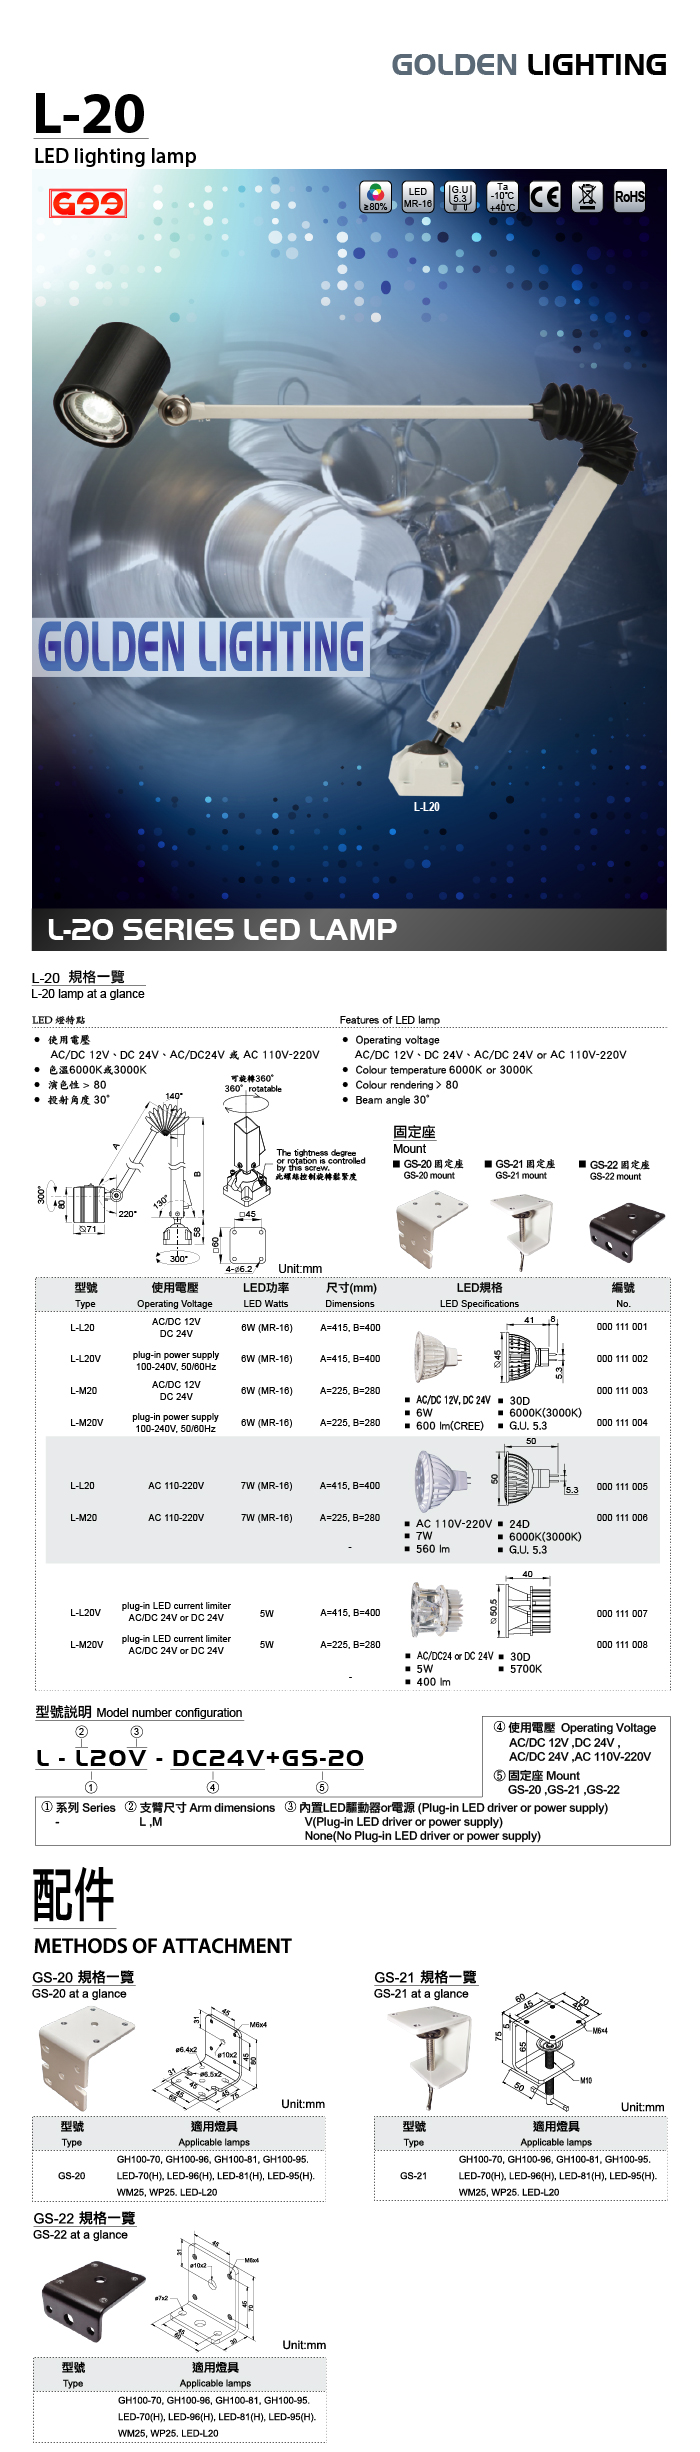 L-20系列 聚光型LED工作燈